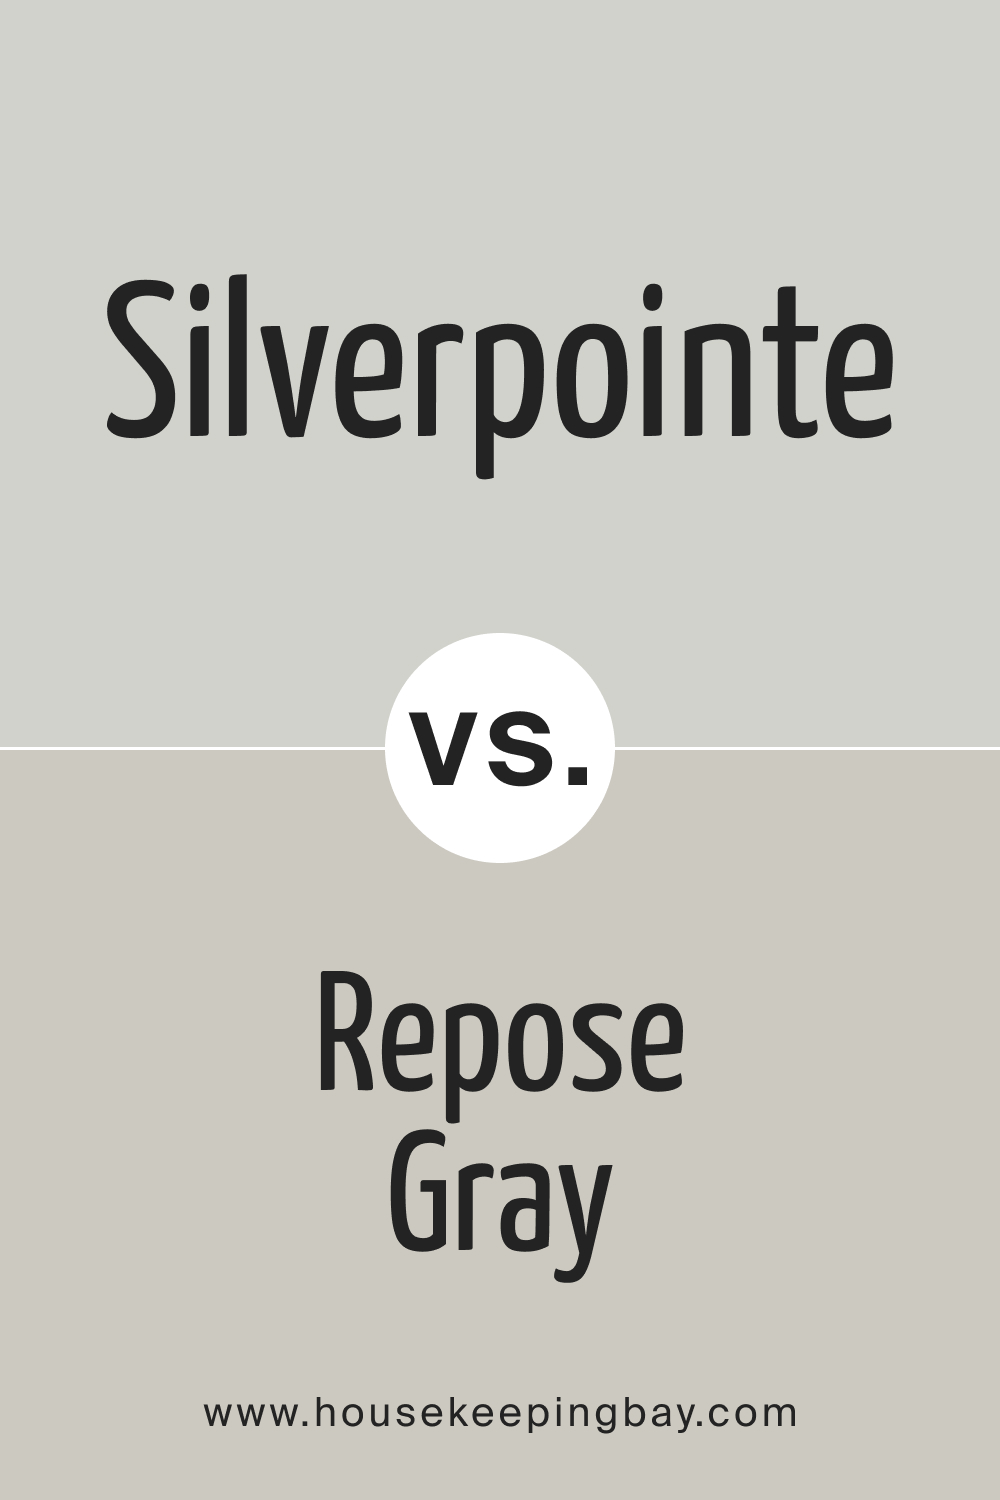 SW Silverpointe vs Repose Gray